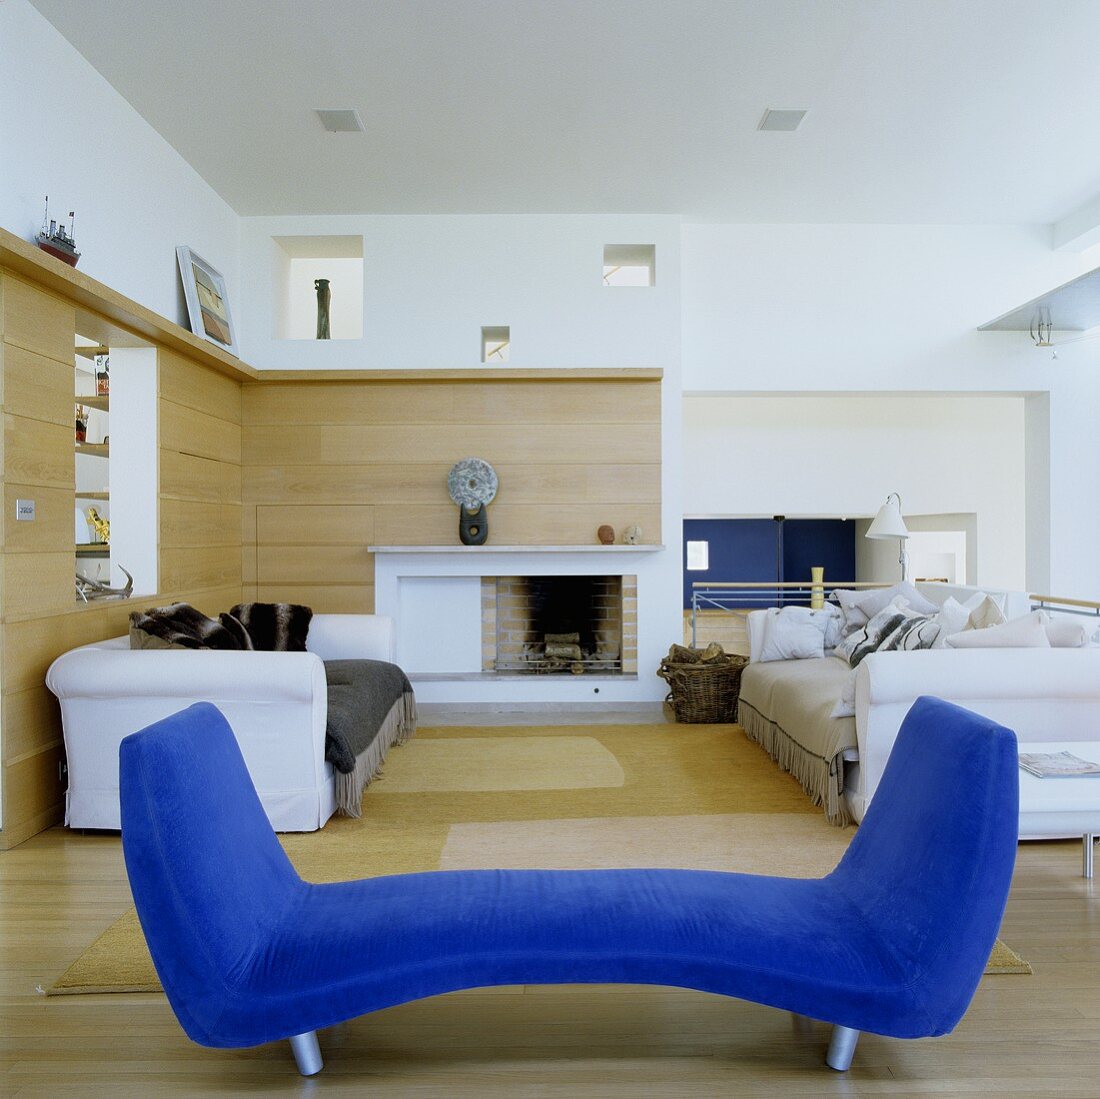 Blauer Diwan und weiße Sofagarnitur im offenen Wohnraum mit holzvertäfelter Wand und Kamin